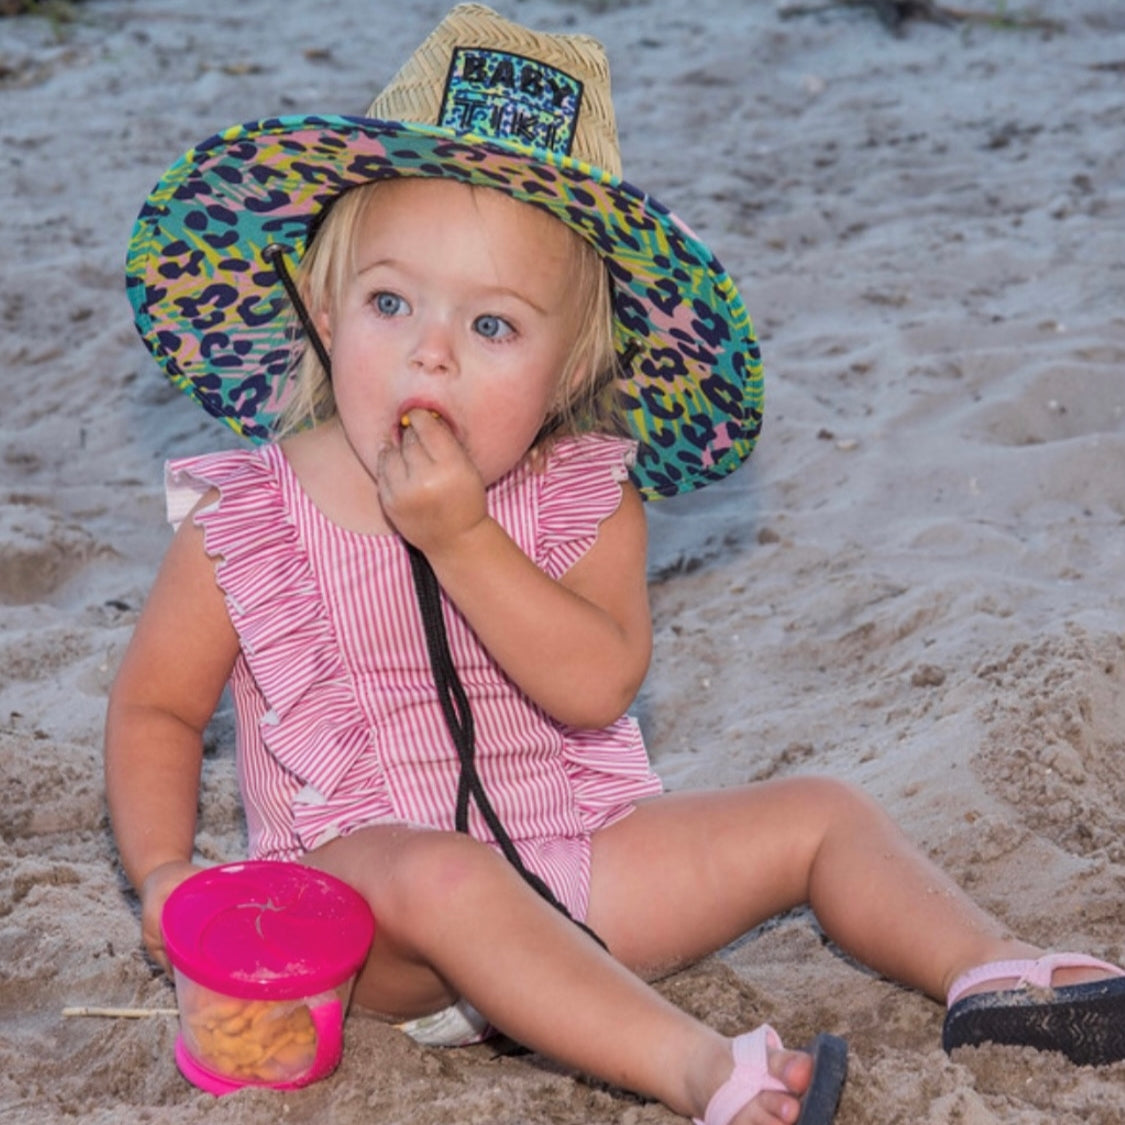 Baby Tiki Wild Thing Toddler Kids Sraw Hat, One Size Baby/Toddler